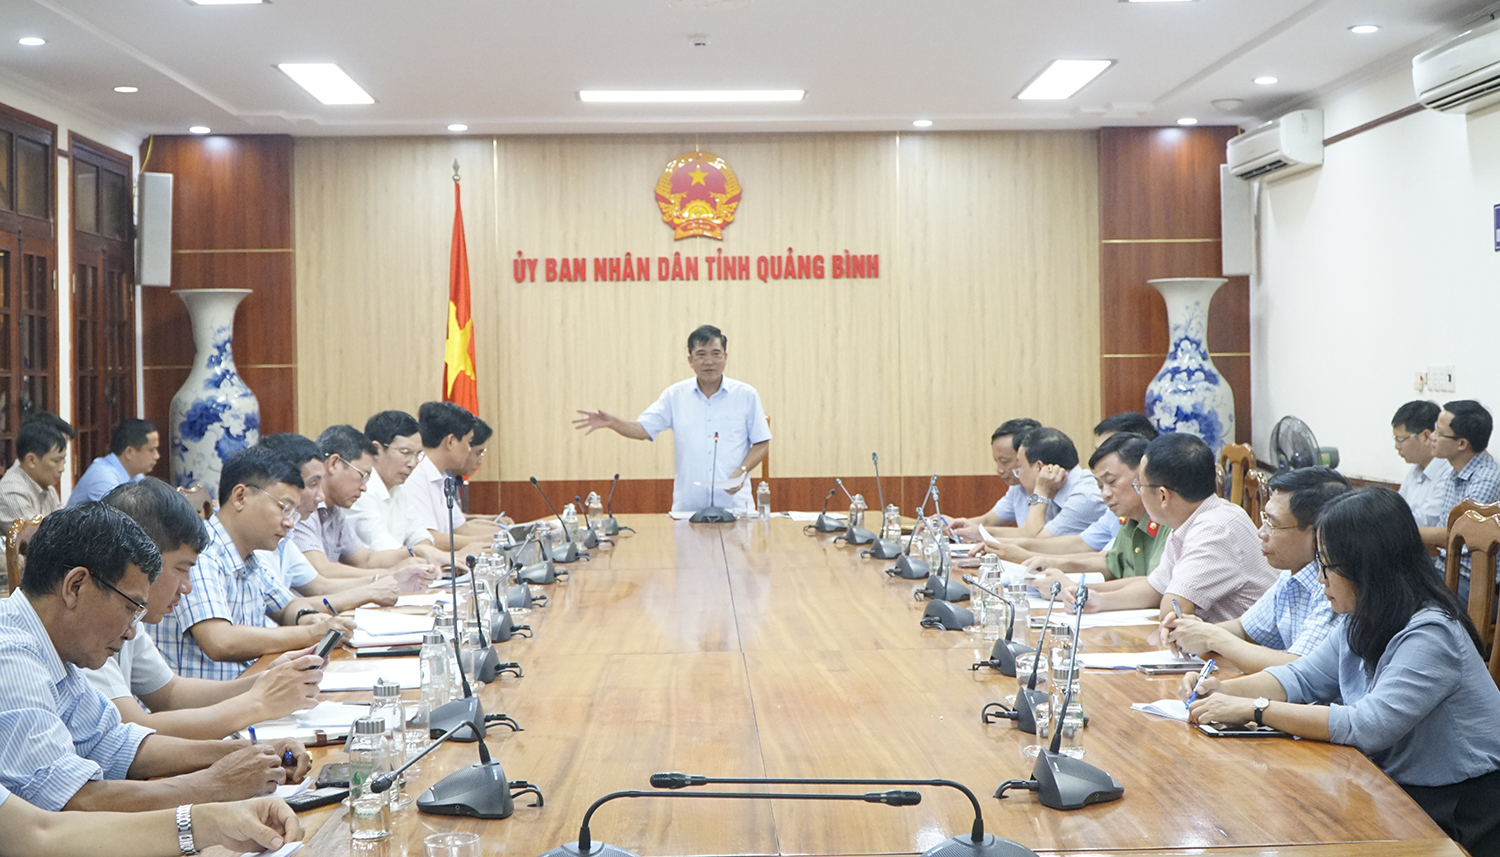 Hội nghị công bố Quy hoạch tỉnh Quảng Bình và Xúc tiến đầu tư năm 2023 sẽ diễn ra vào ngày 25/6